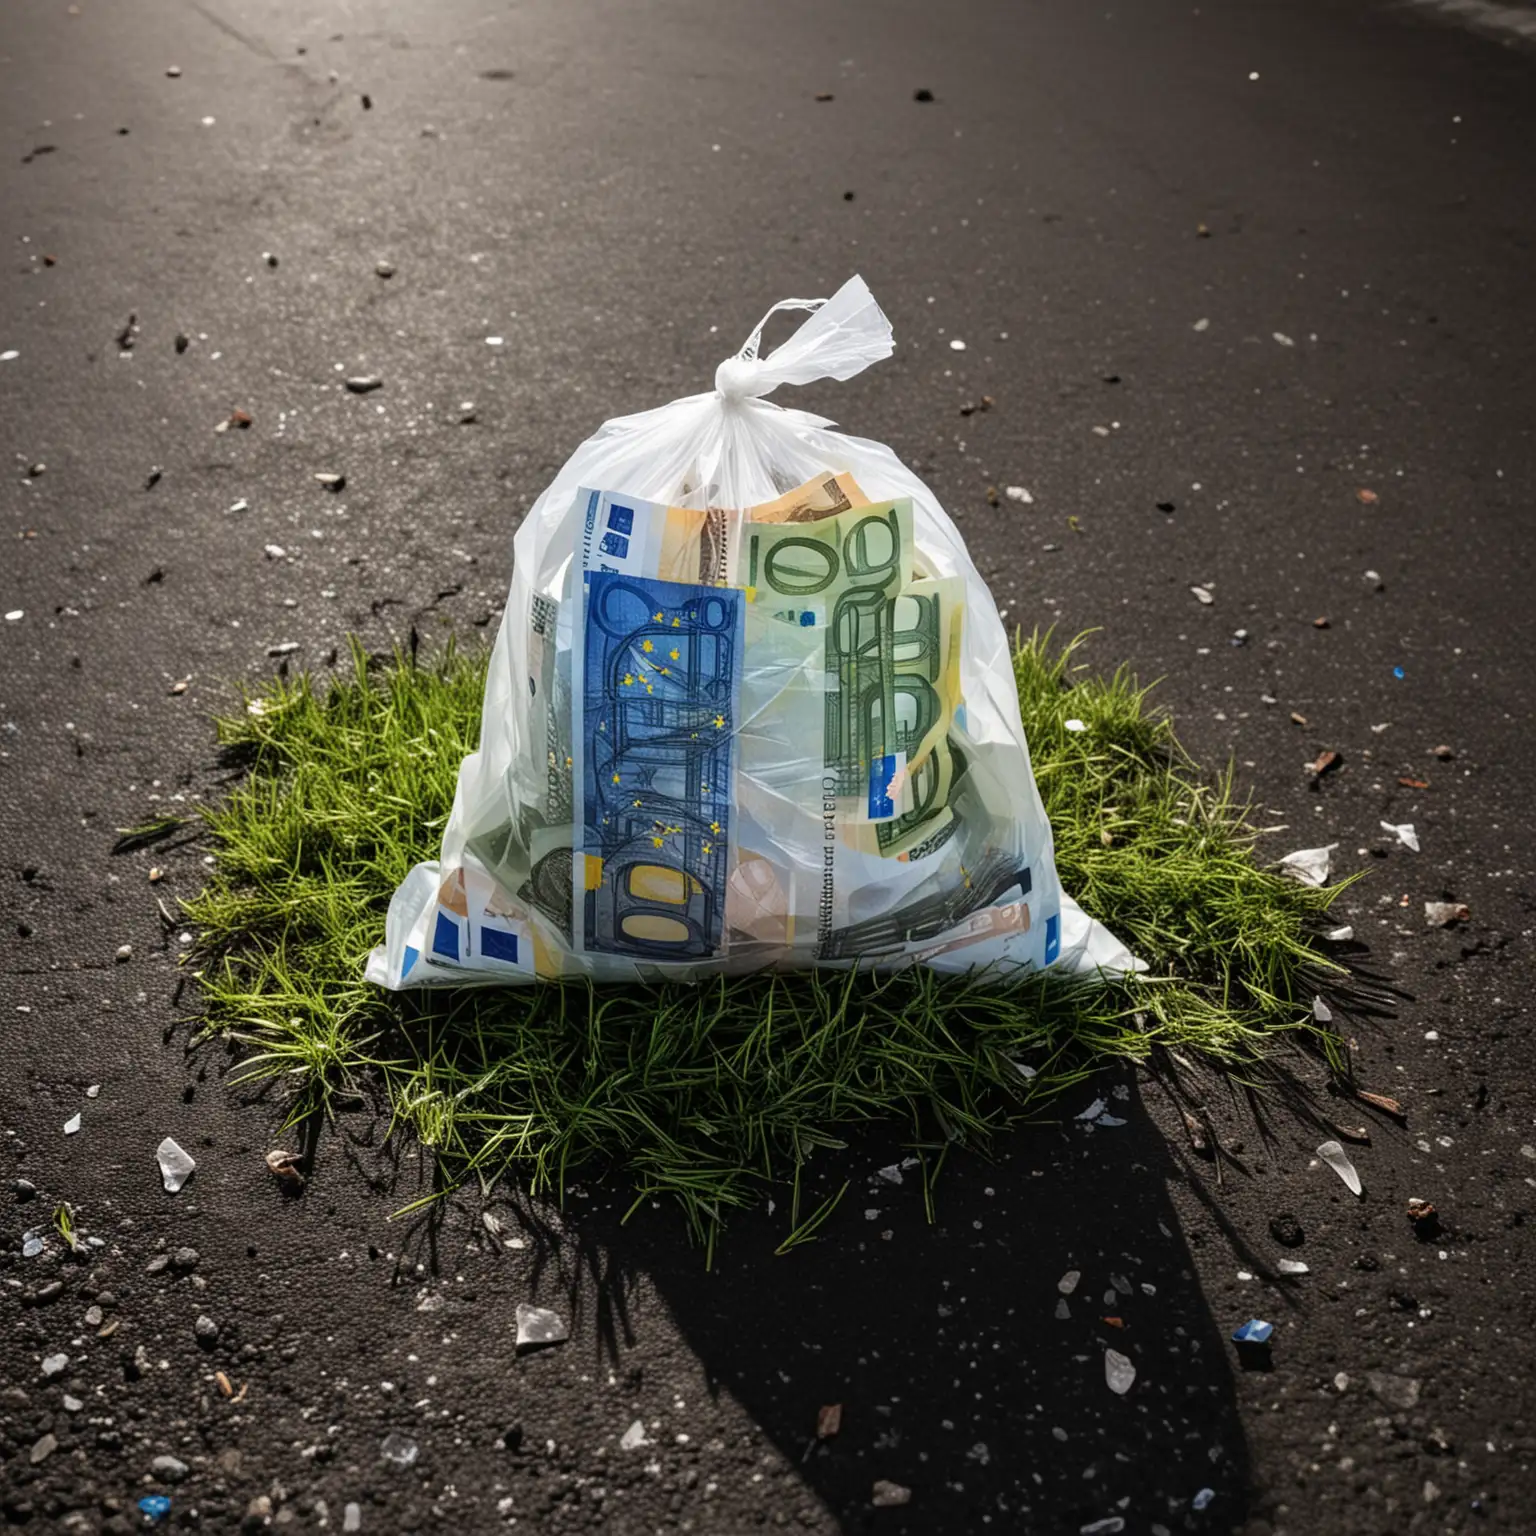 sac en plastique rempli de billets d'euros pausé sur le sol goudronné avec herbe,  
de nuit